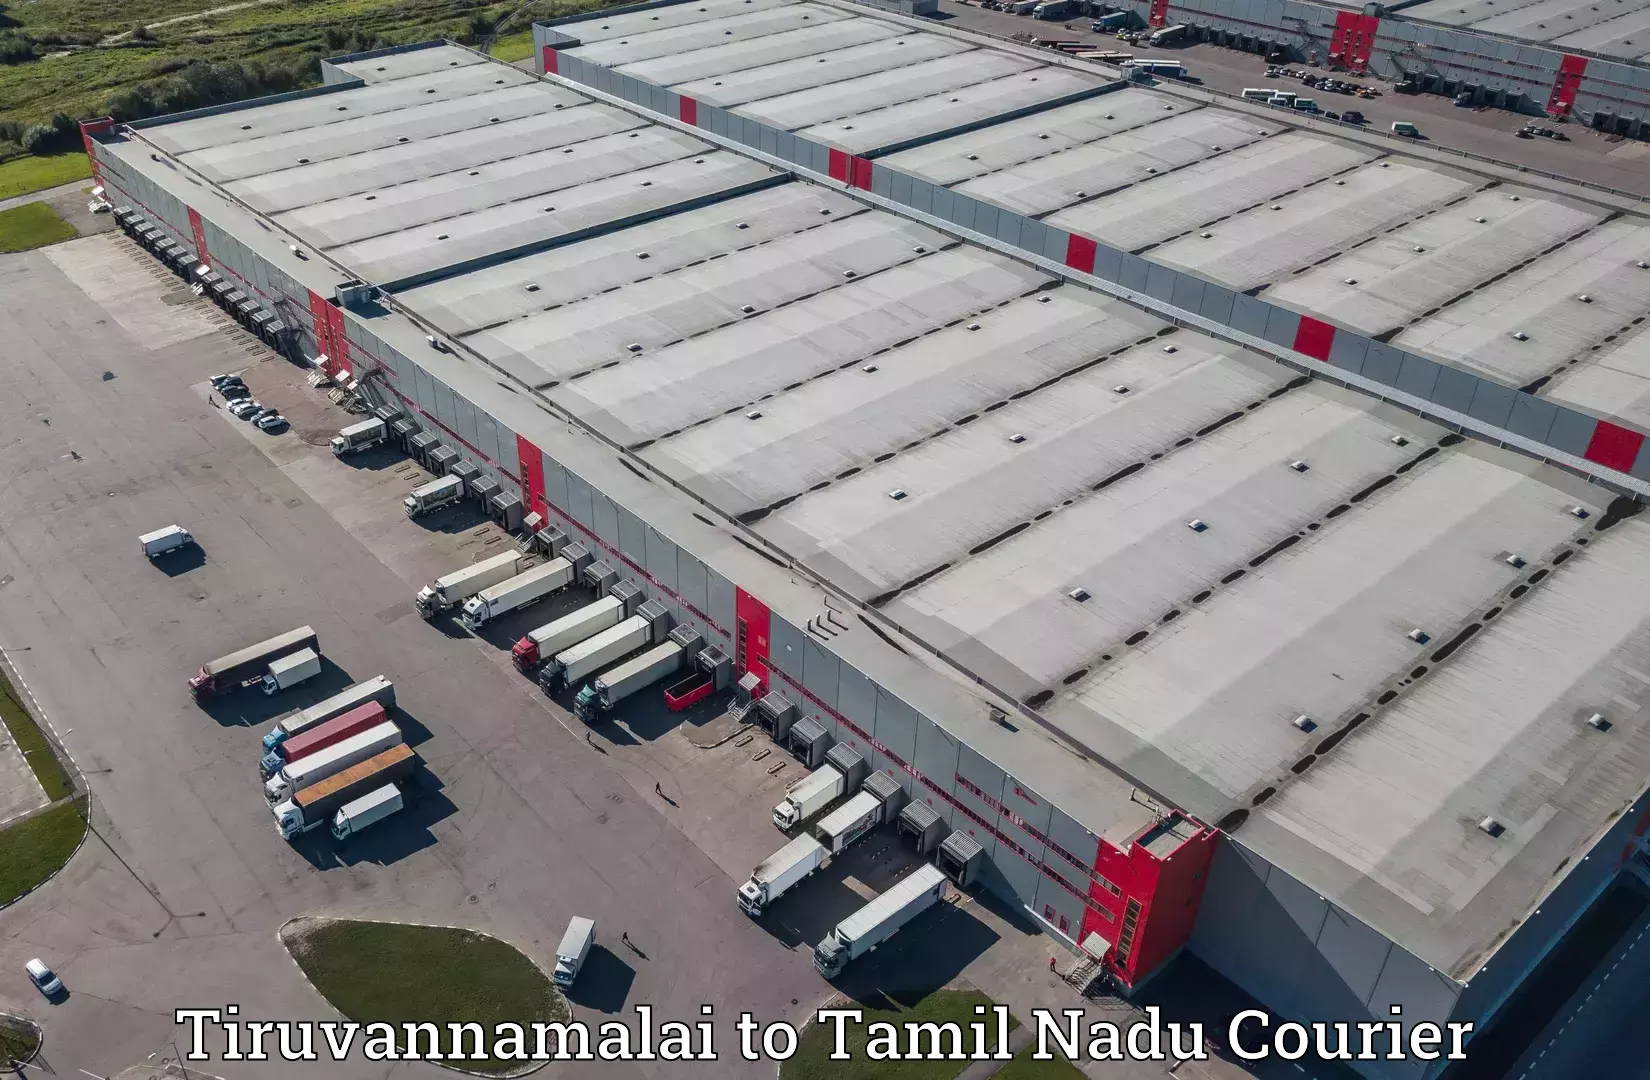 Courier app Tiruvannamalai to Thiruvadanai